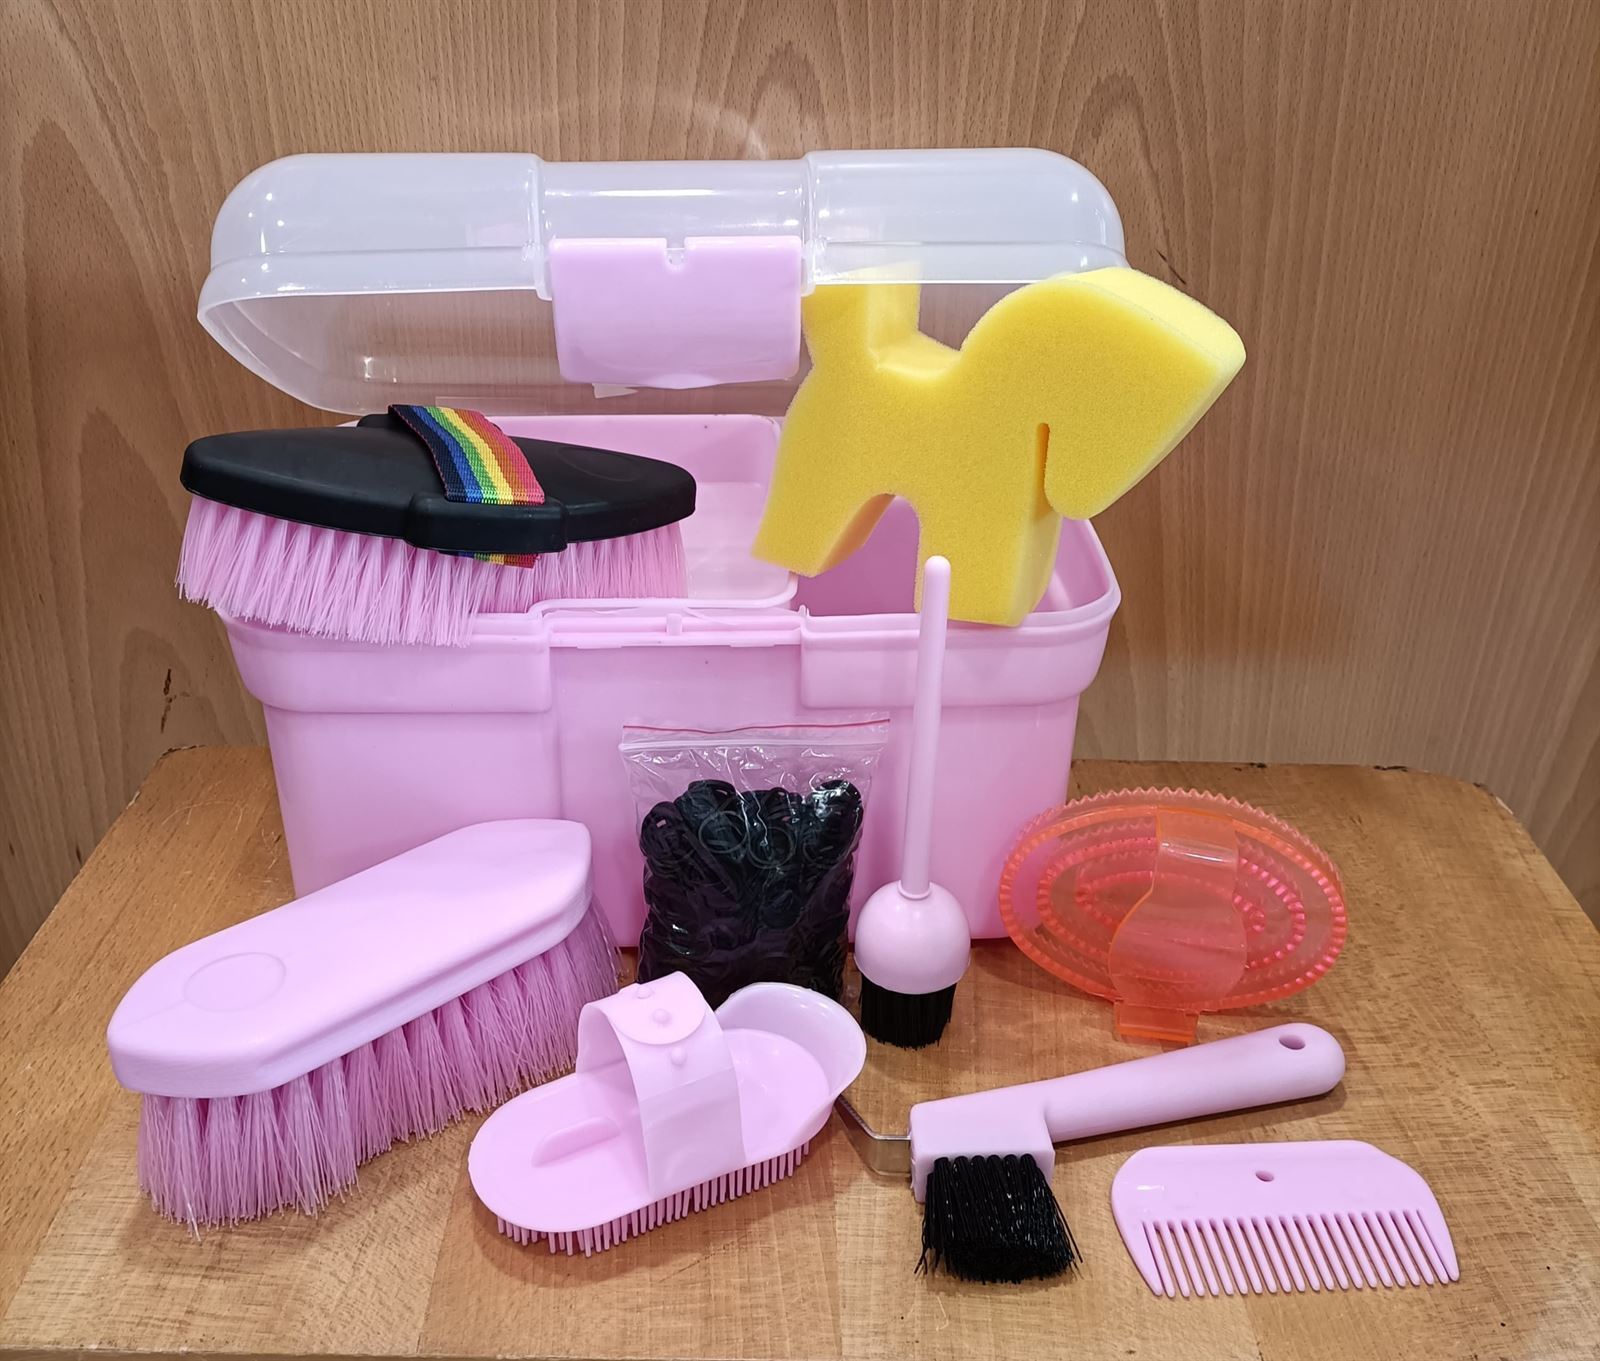 Caja útiles de limpieza HH, color rosa - Imagen 1